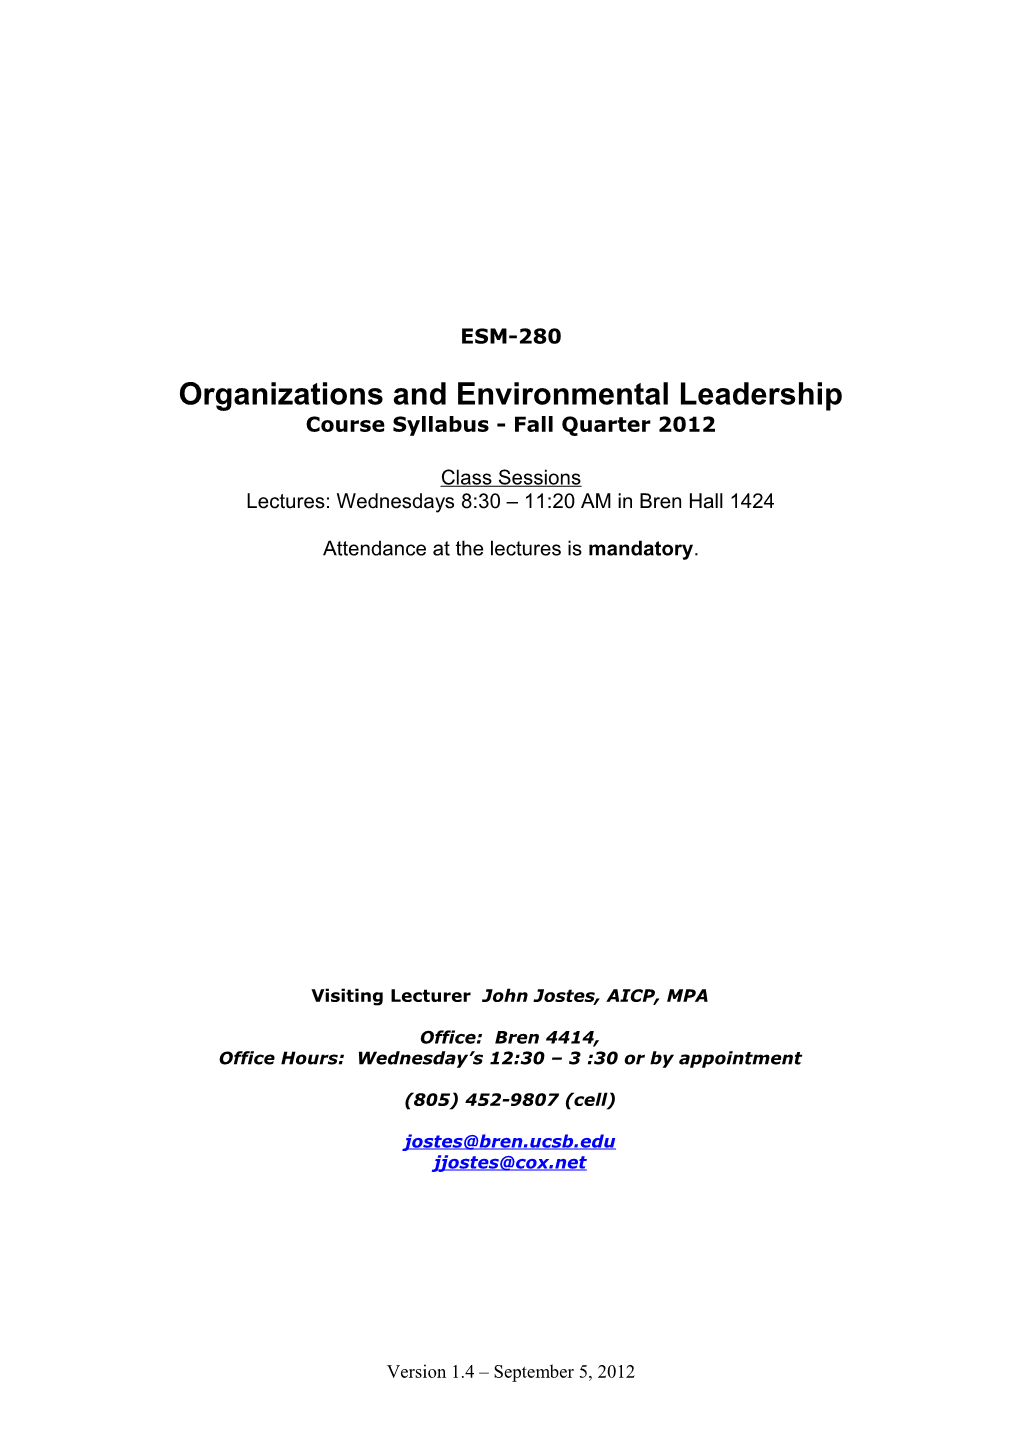 Organizations and Environmental Leadership